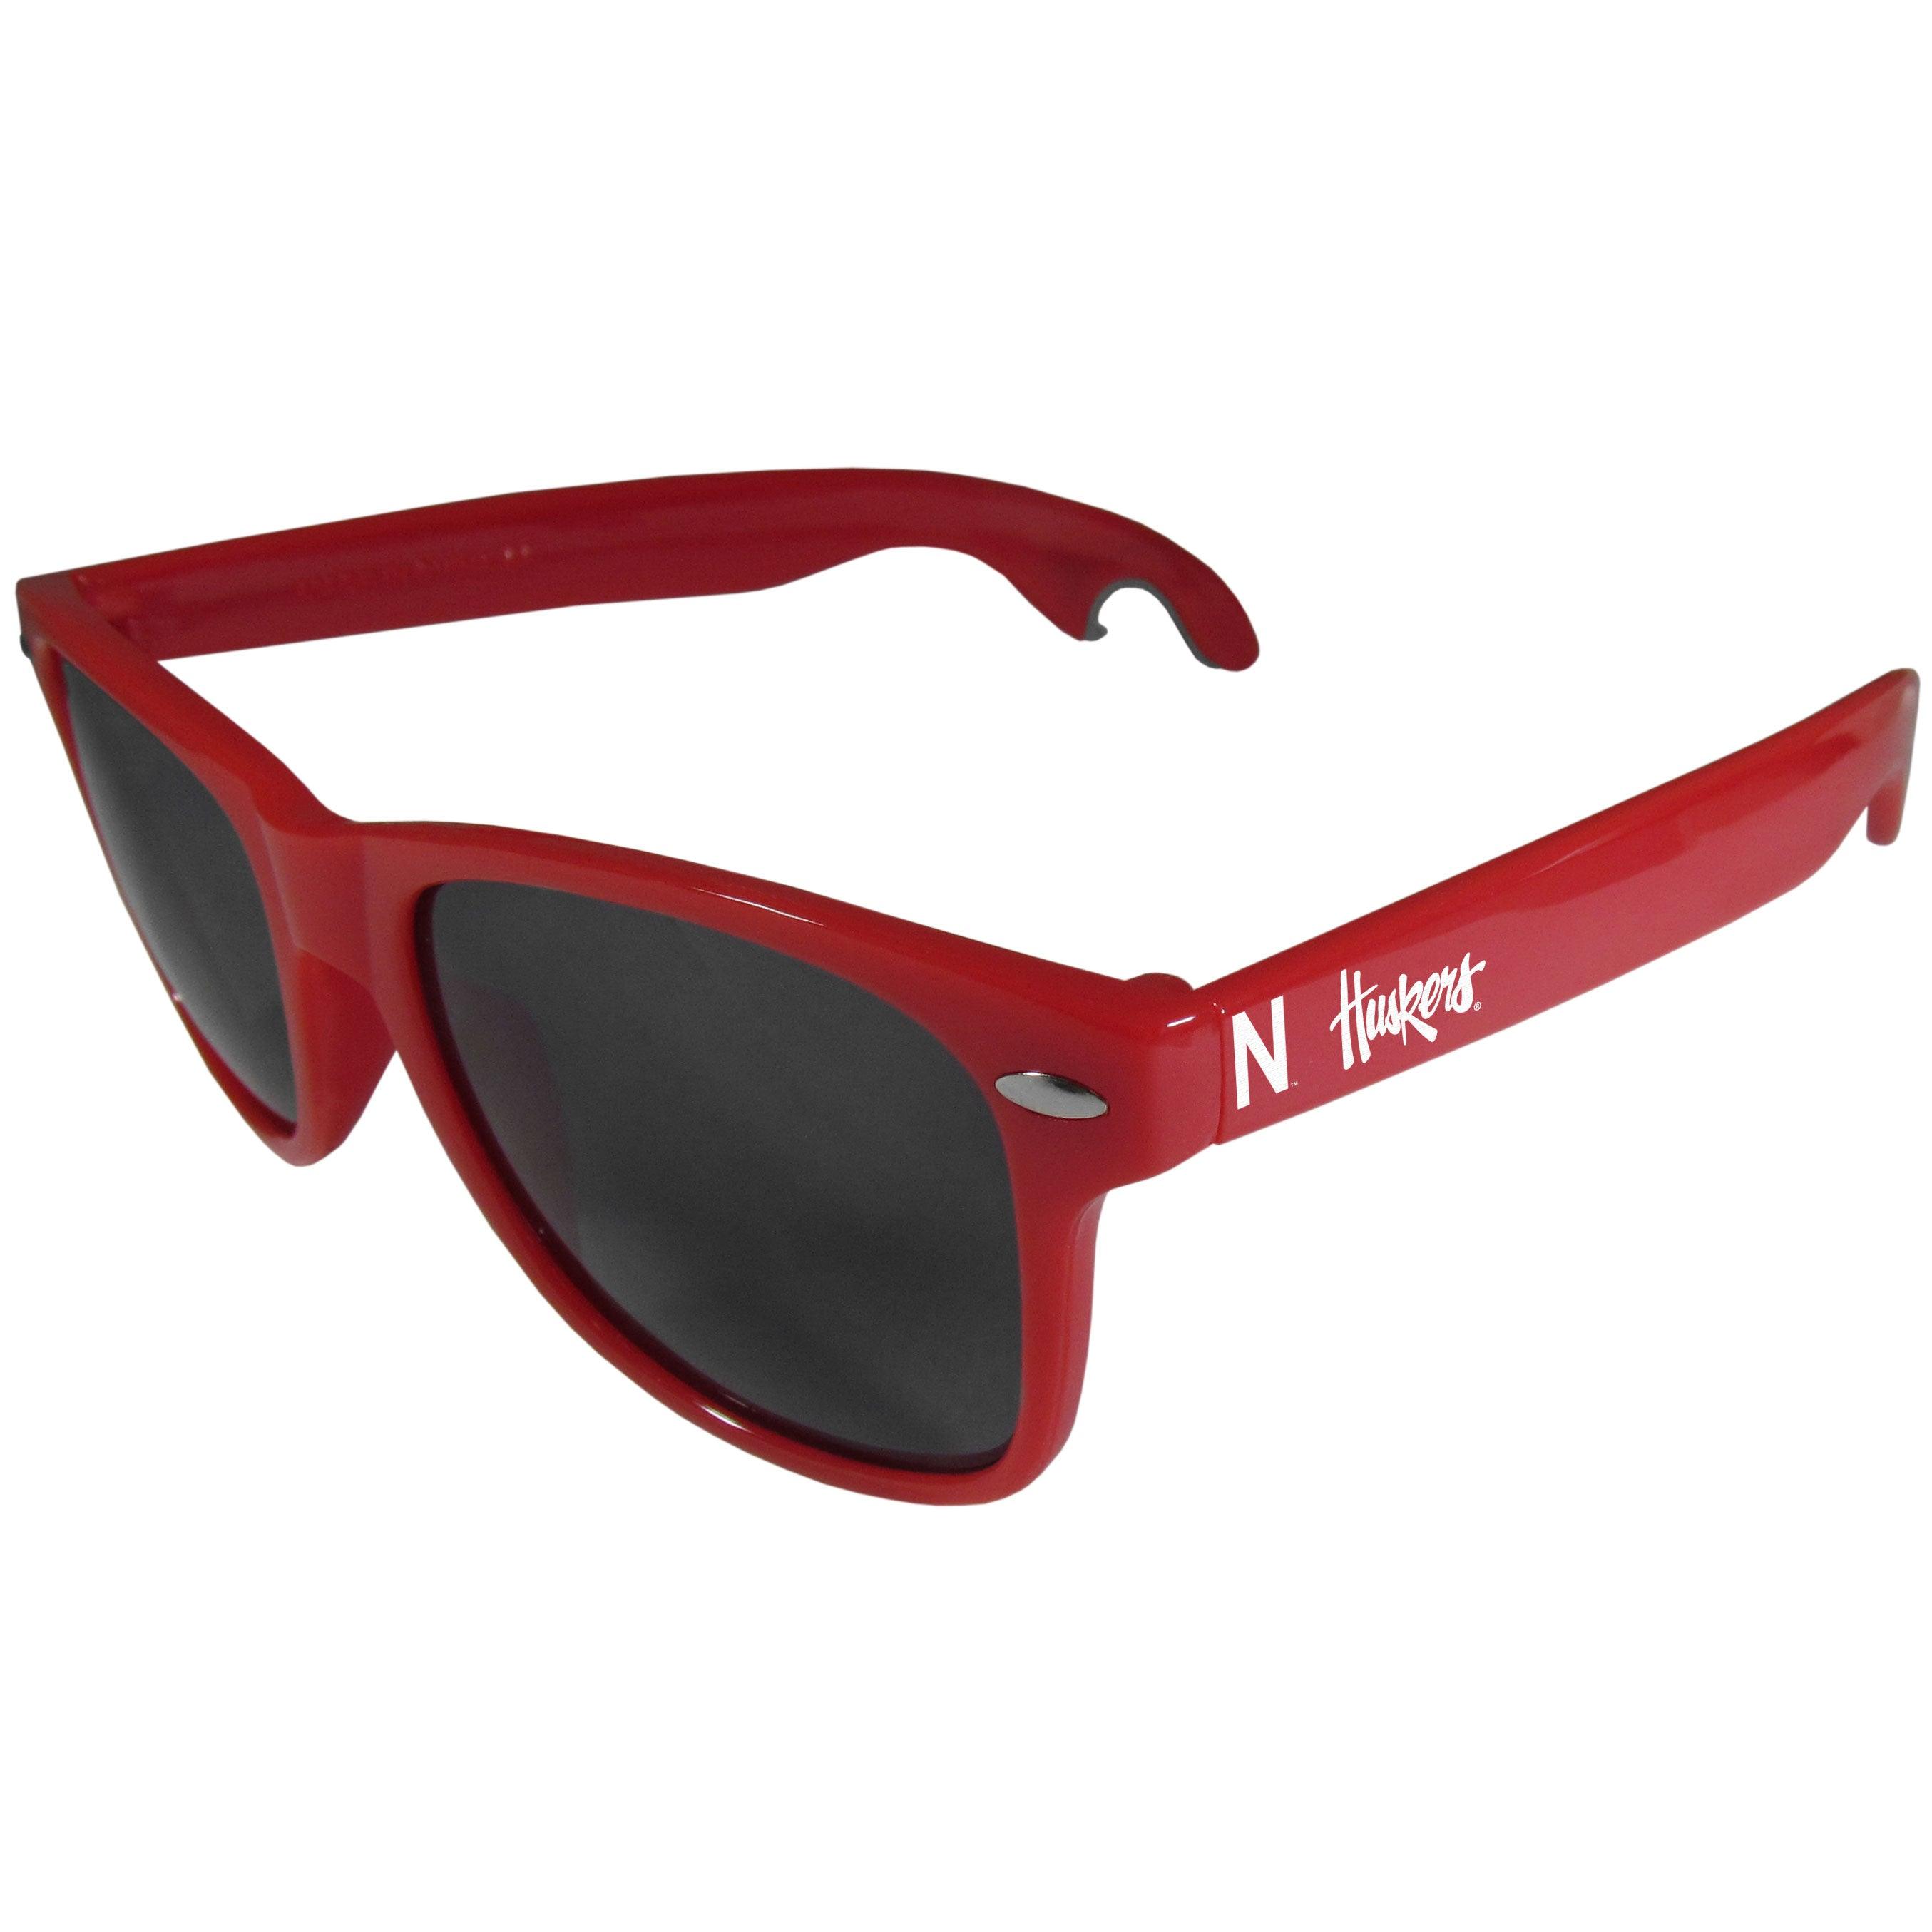 Nebraska Cornhuskers Beachfarer Bottle Opener Sunglasses, Red - Flyclothing LLC